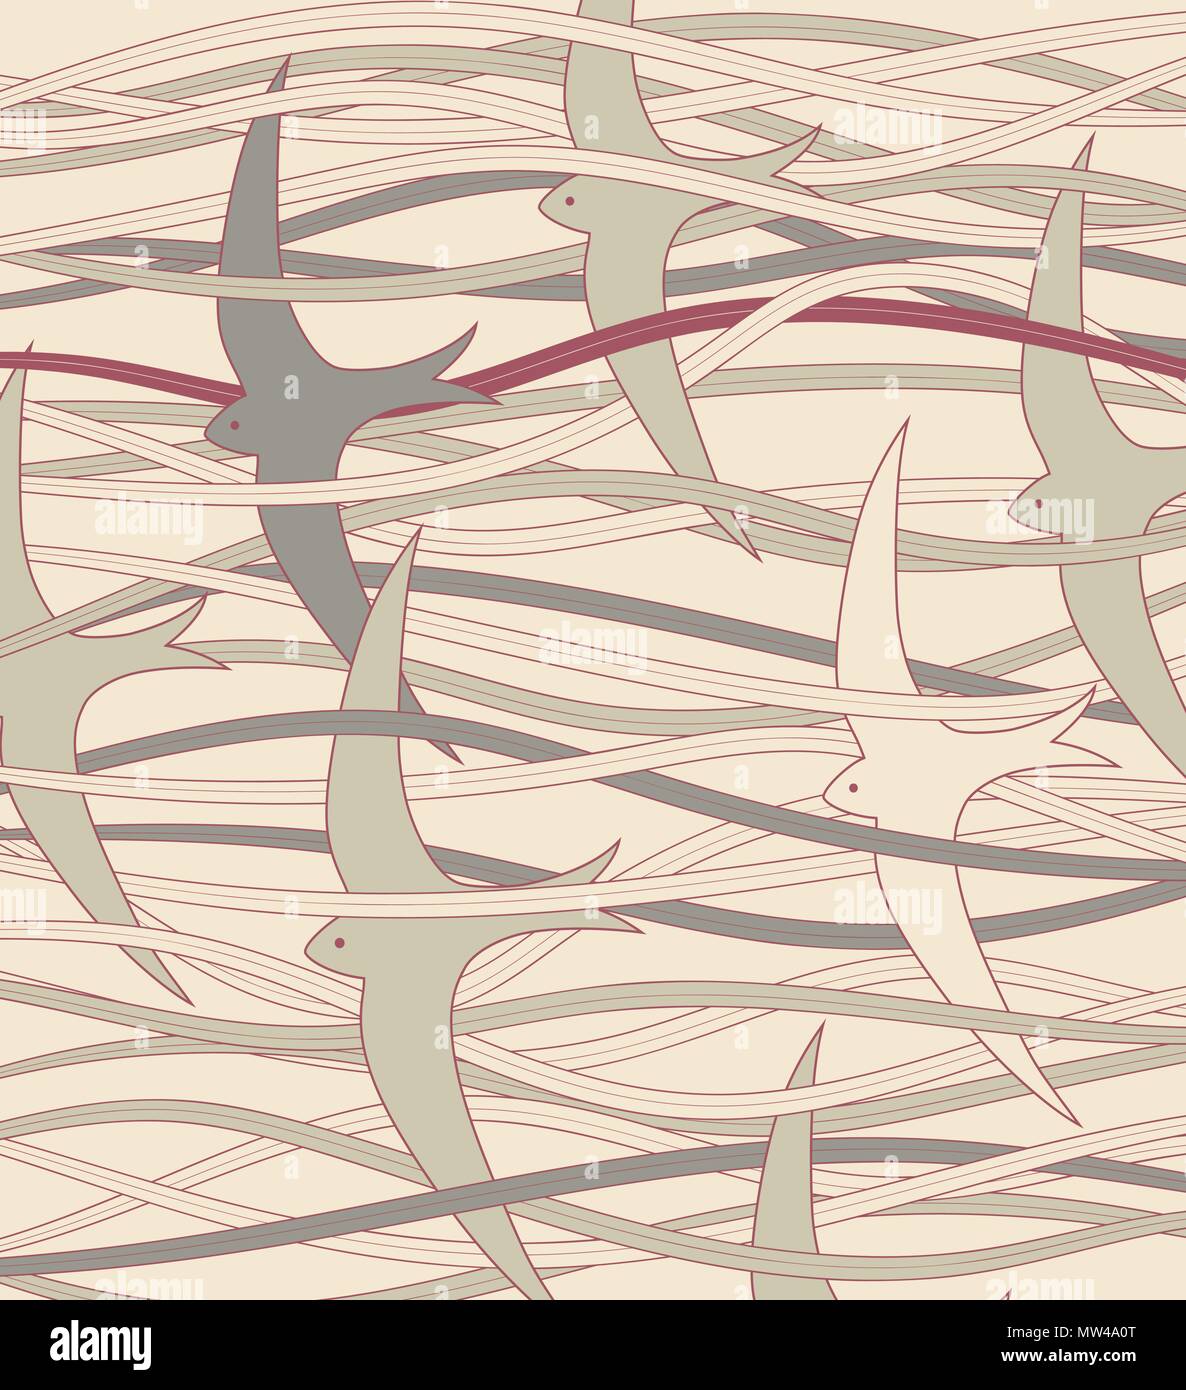 Ilustración vectorial editable de pez volador o vencejos Ilustración del Vector